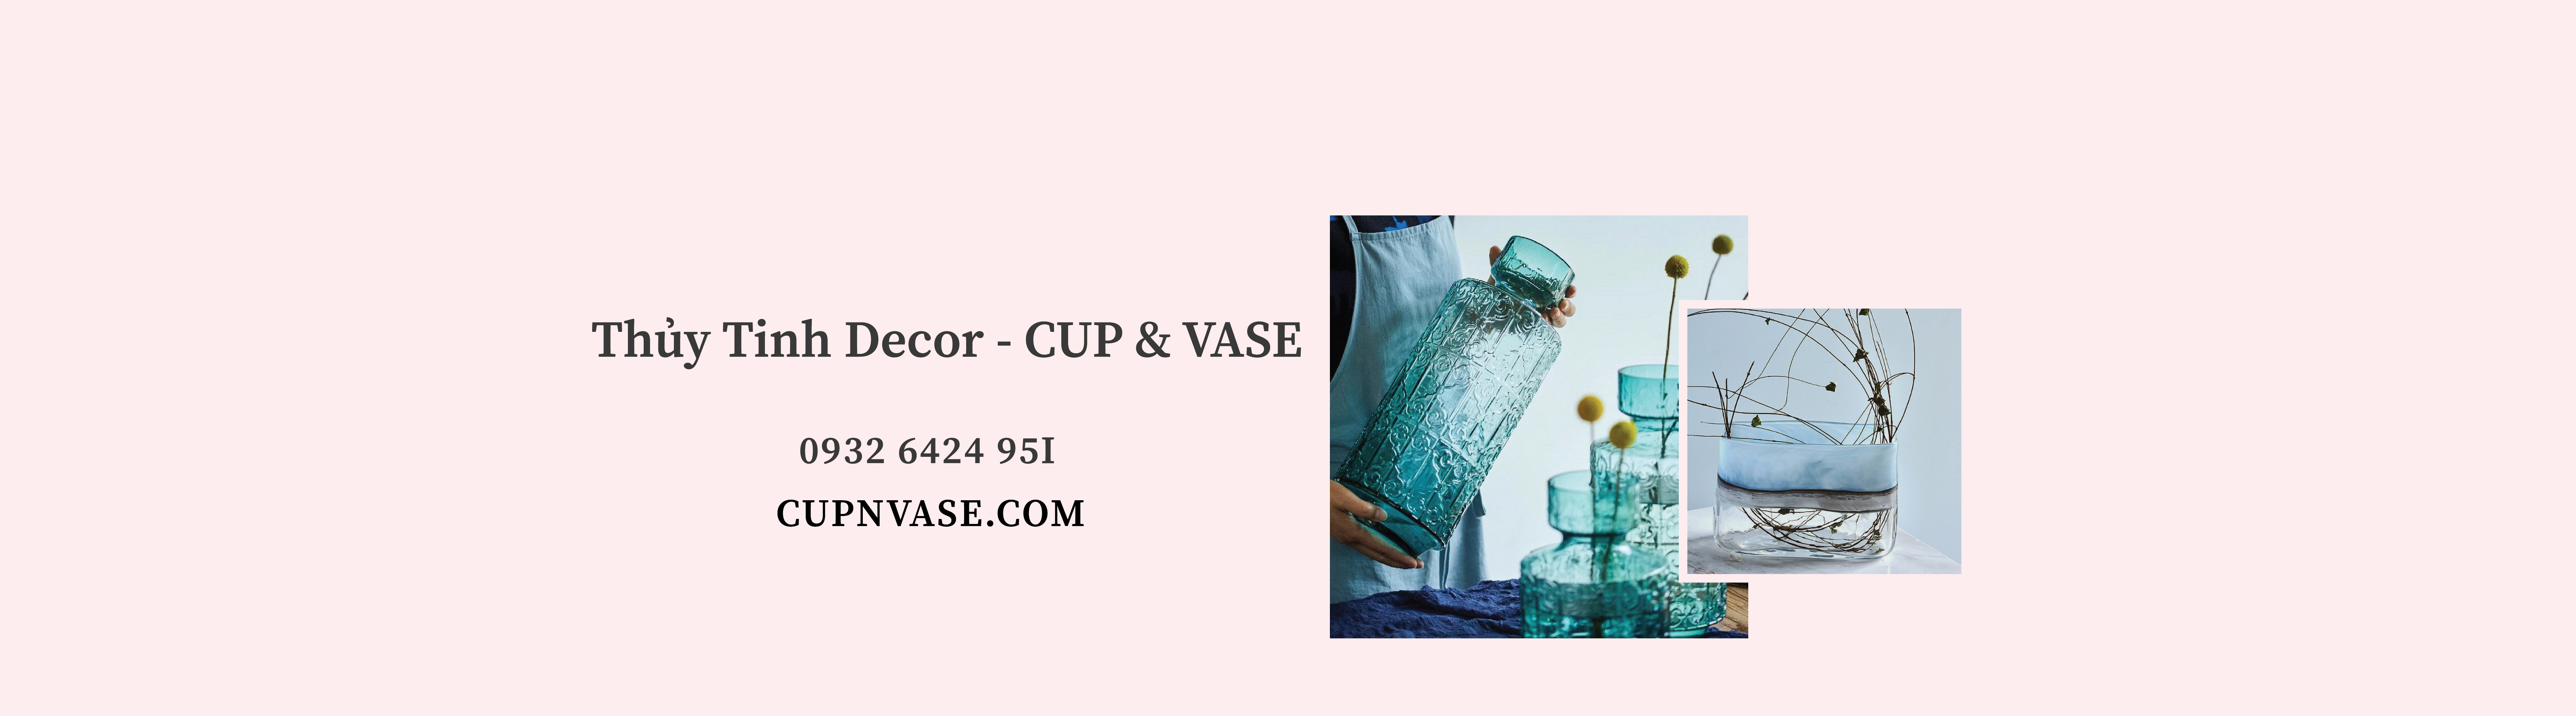 CUP & VASE